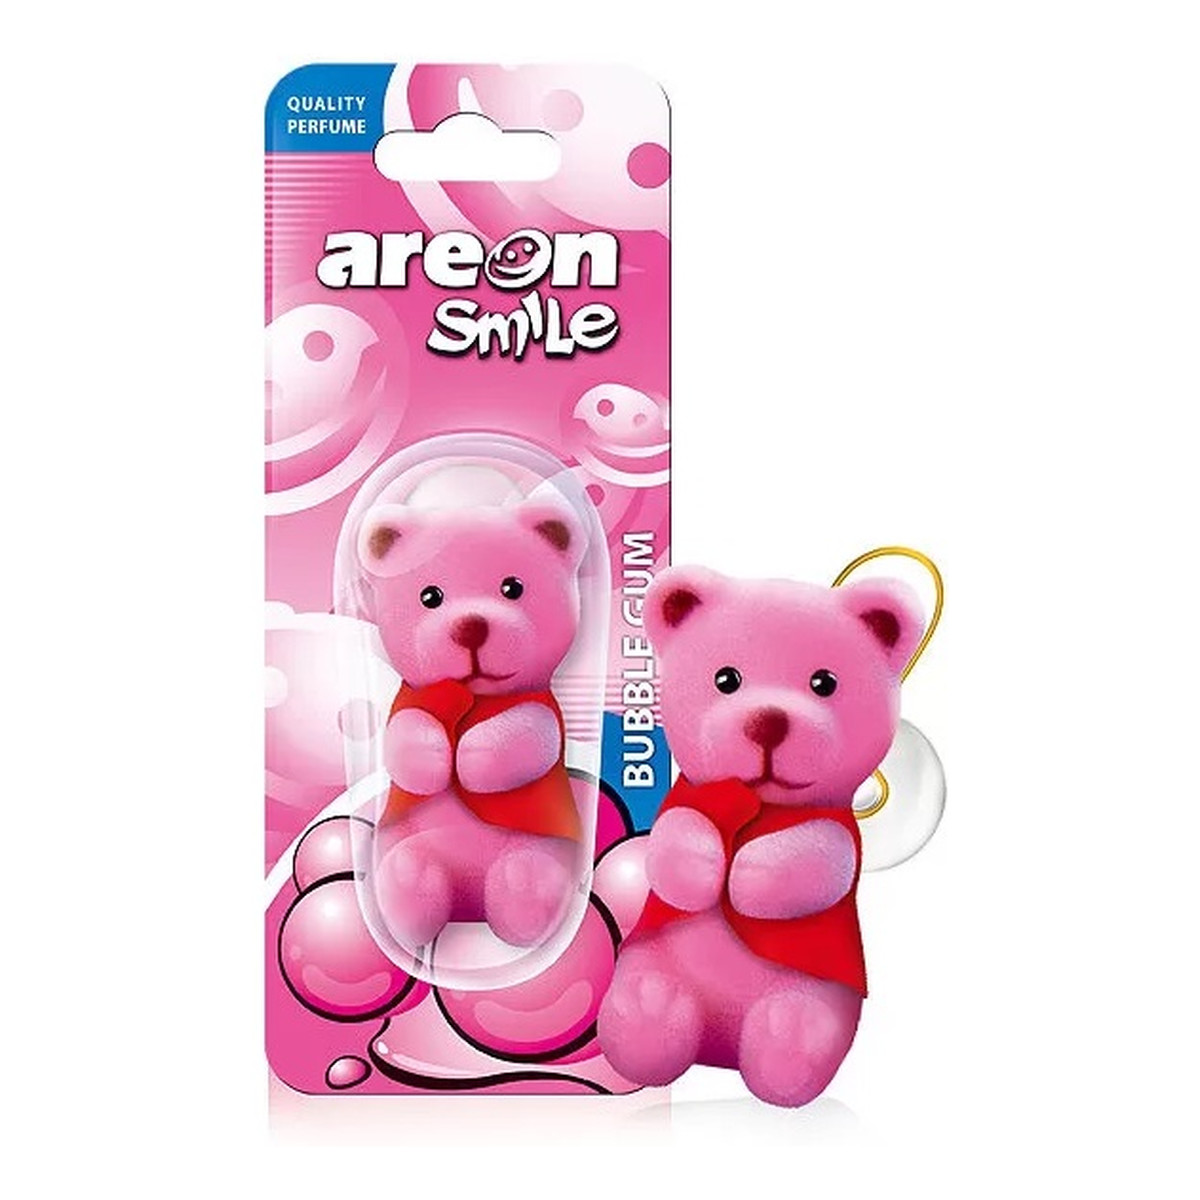 Areon Smile toy odświeżacz do samochodu bubble gum